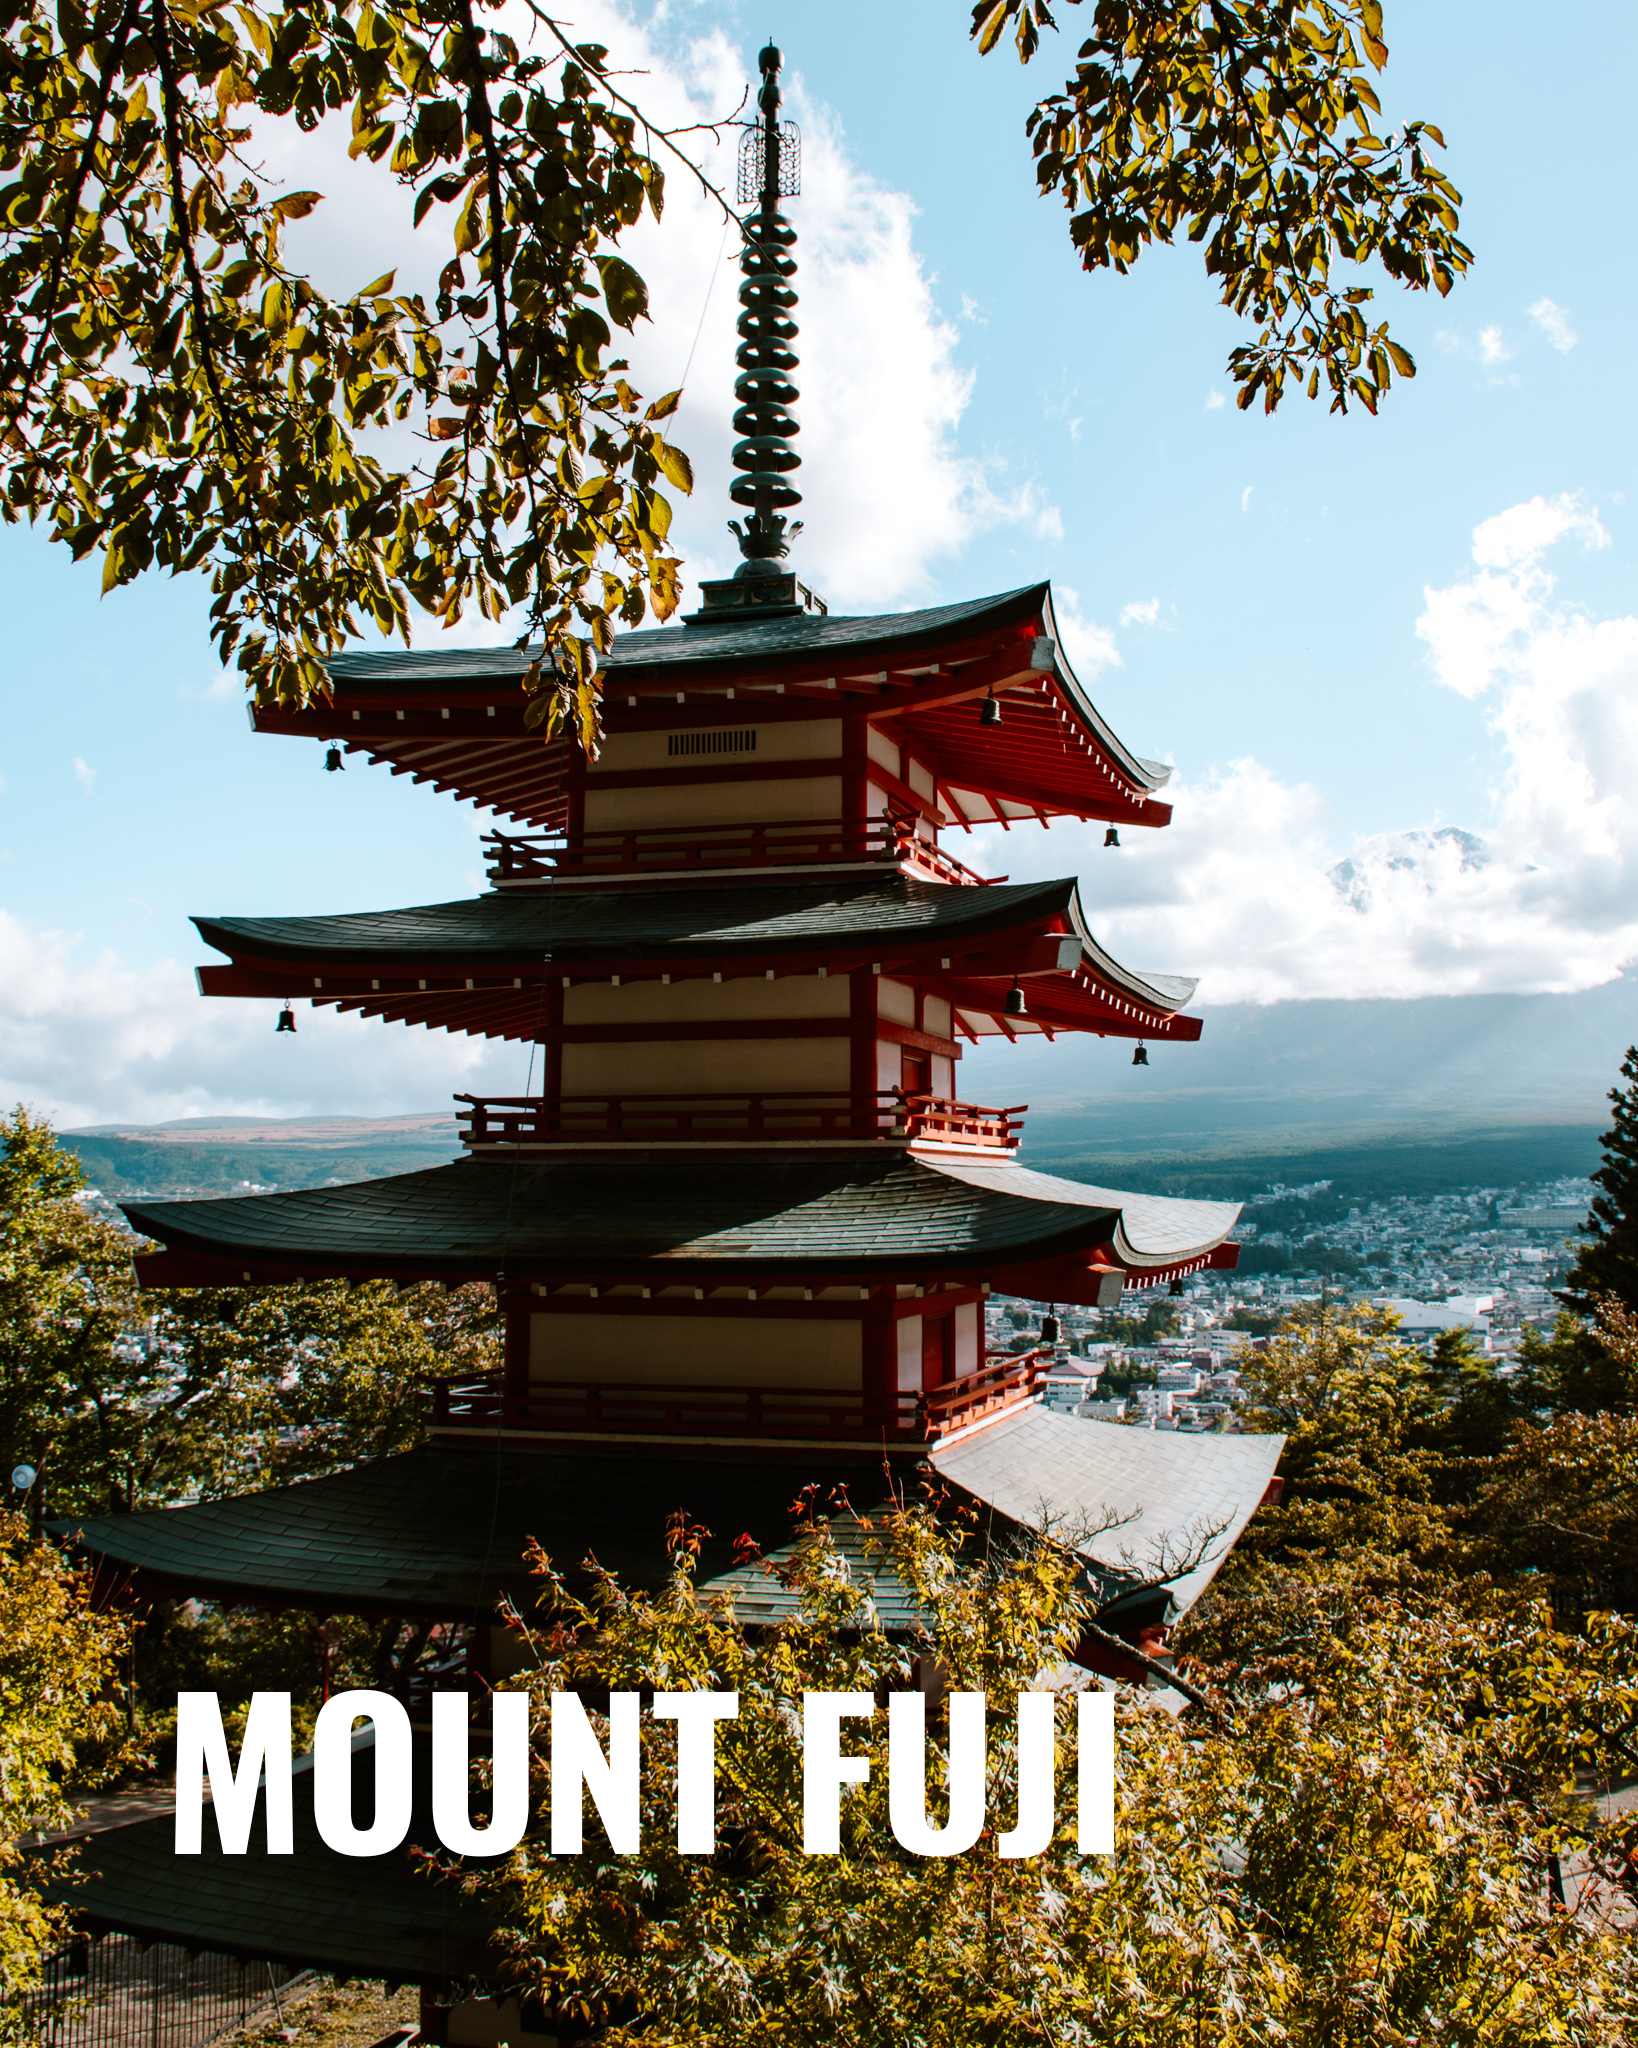 Best Place to Visit Mount Fuji, Japan fushimi inari